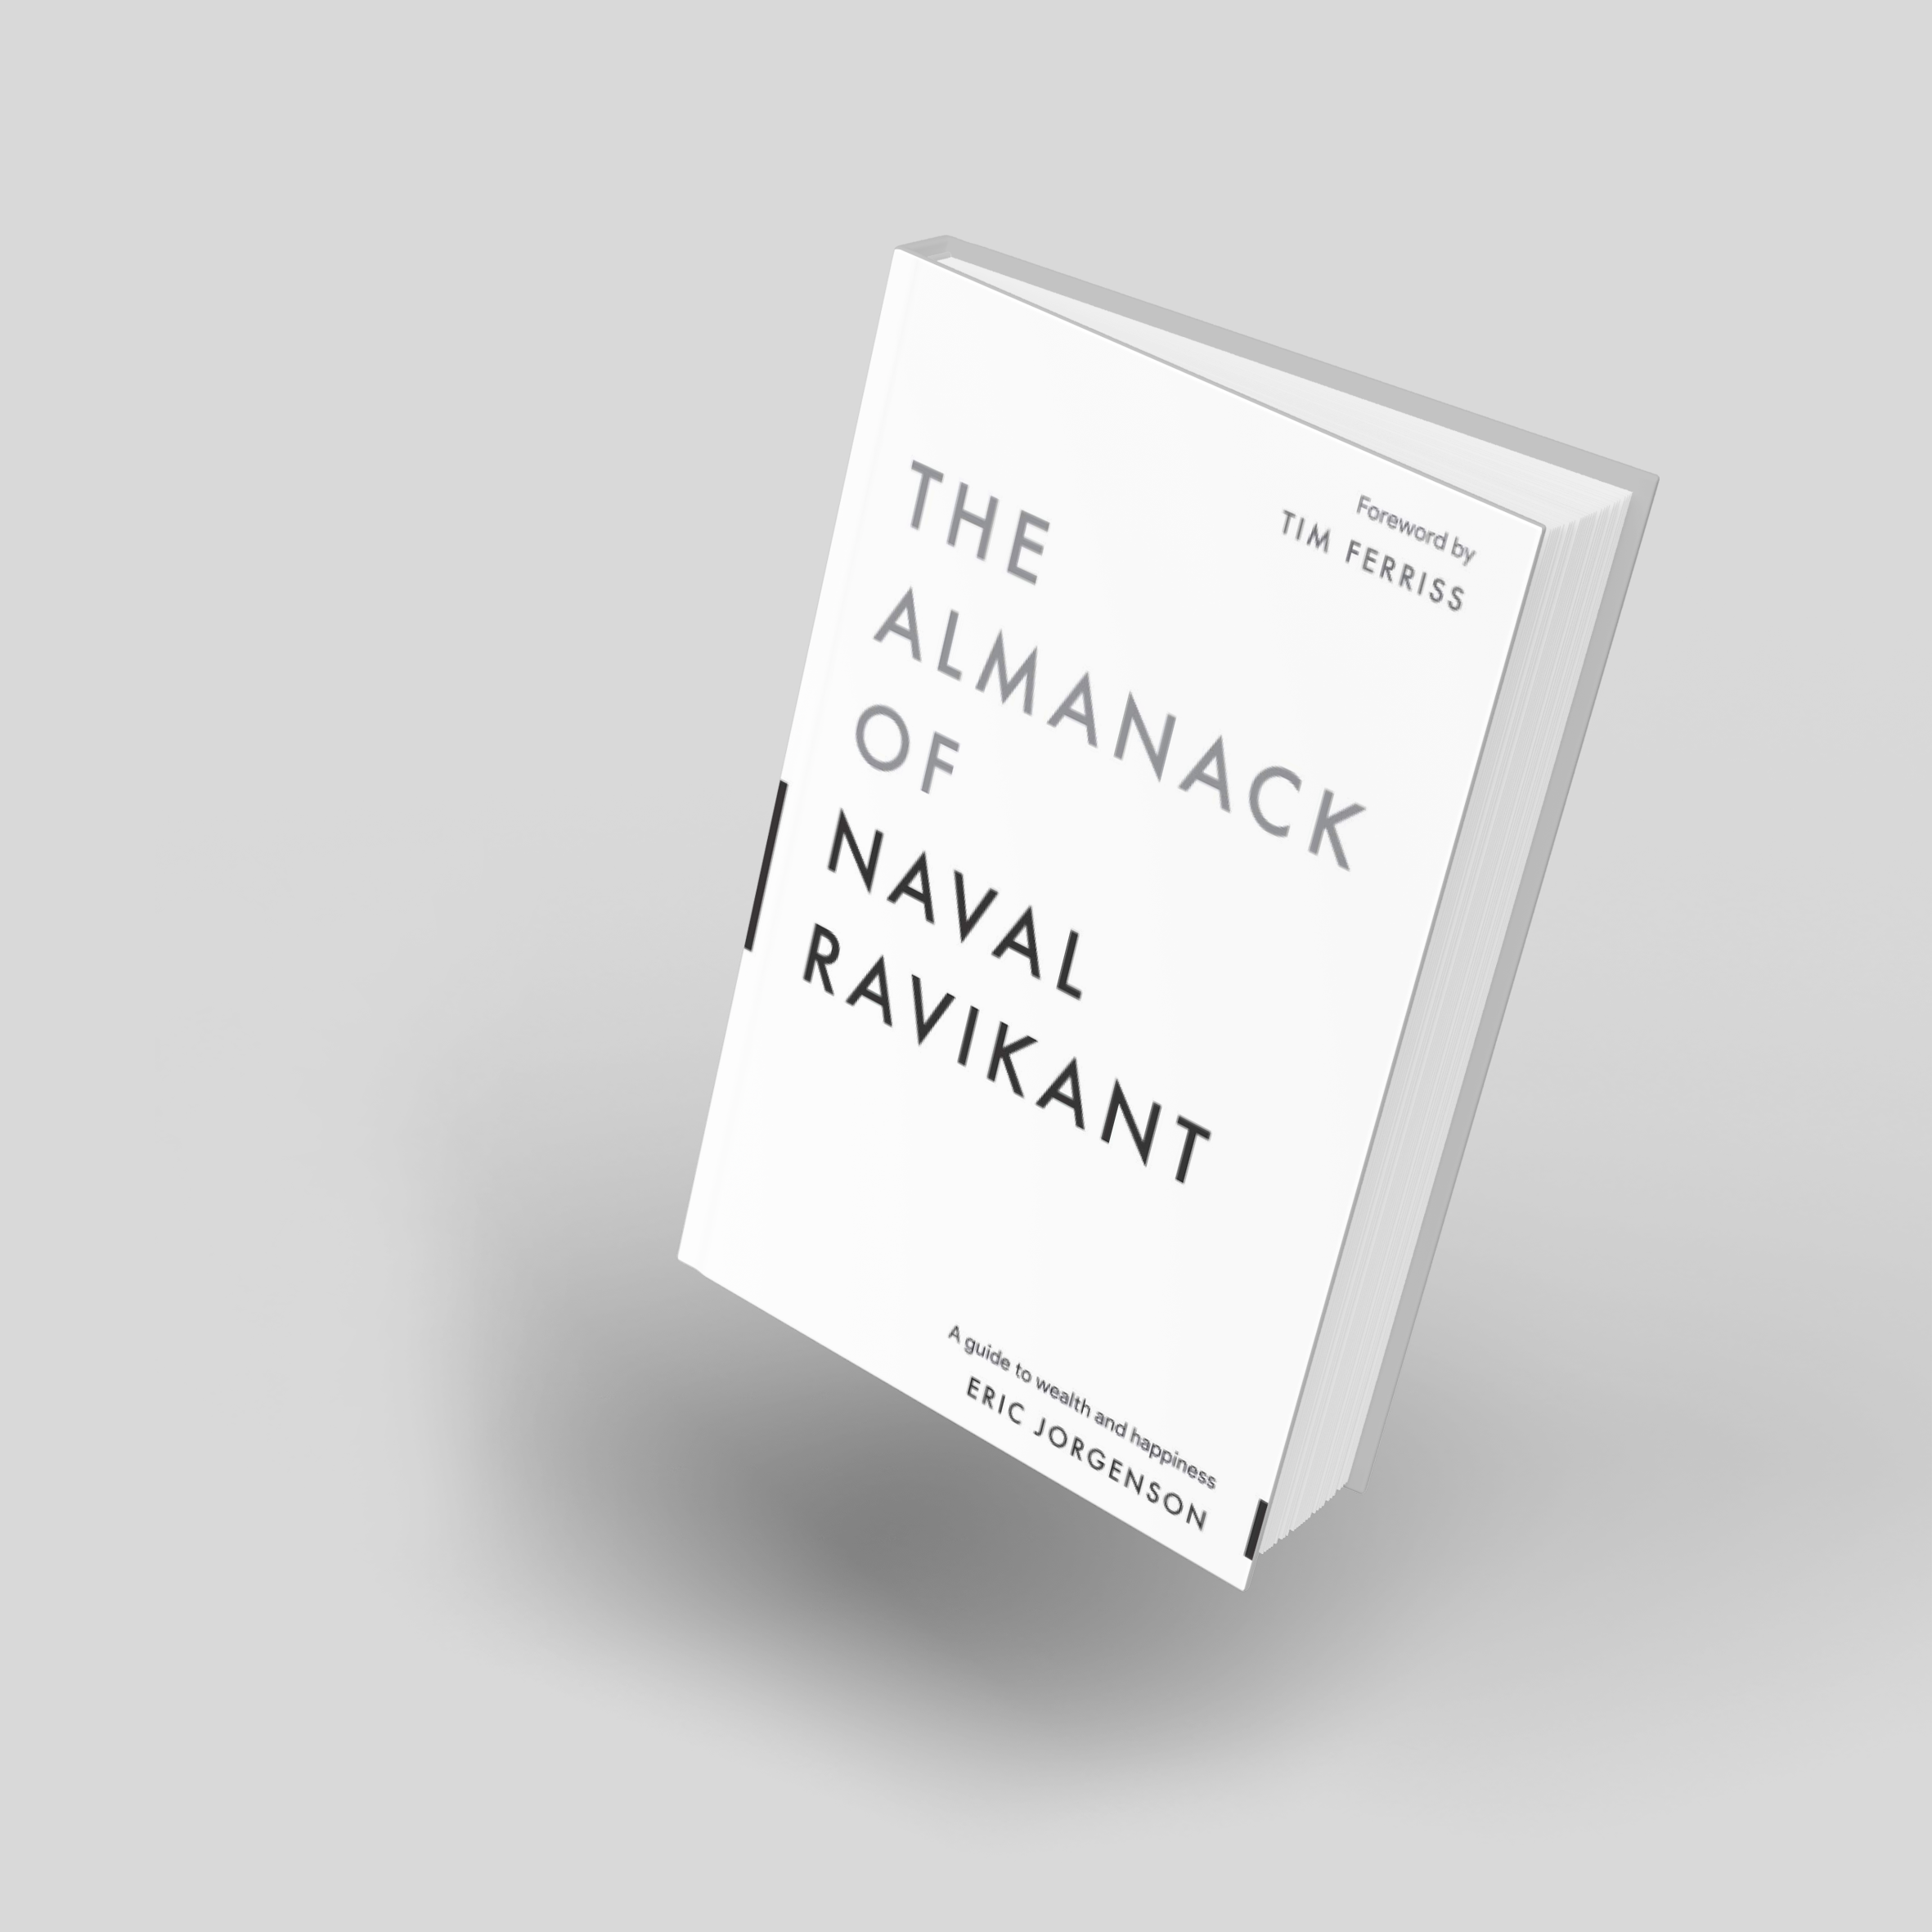 L'Almanach de Naval Ravikant by Eric Jorgenson - Audiobook 